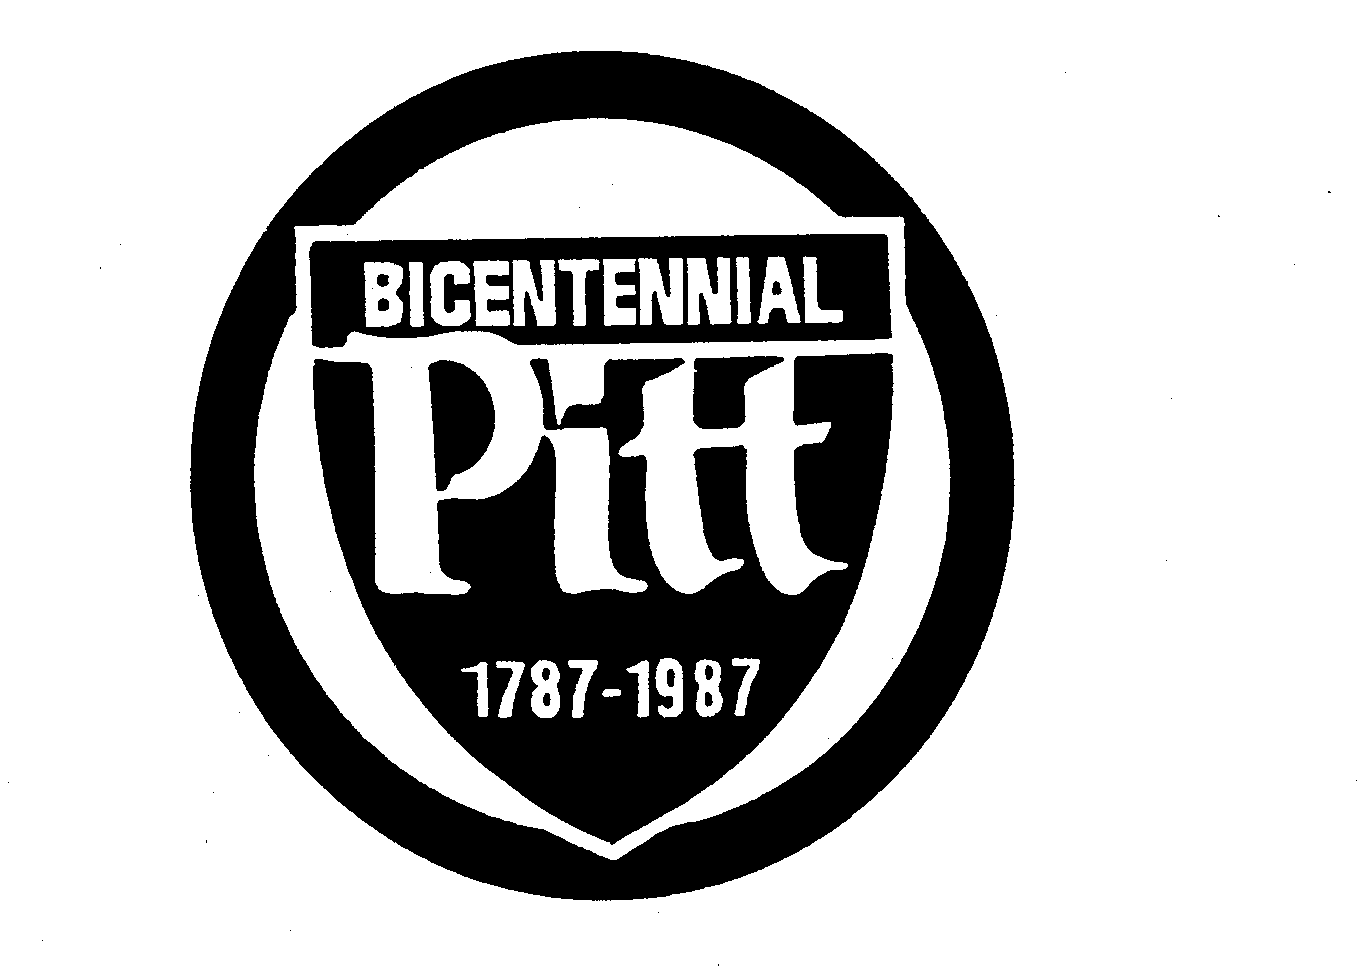  BICENTENNIAL PITT 1787-1987